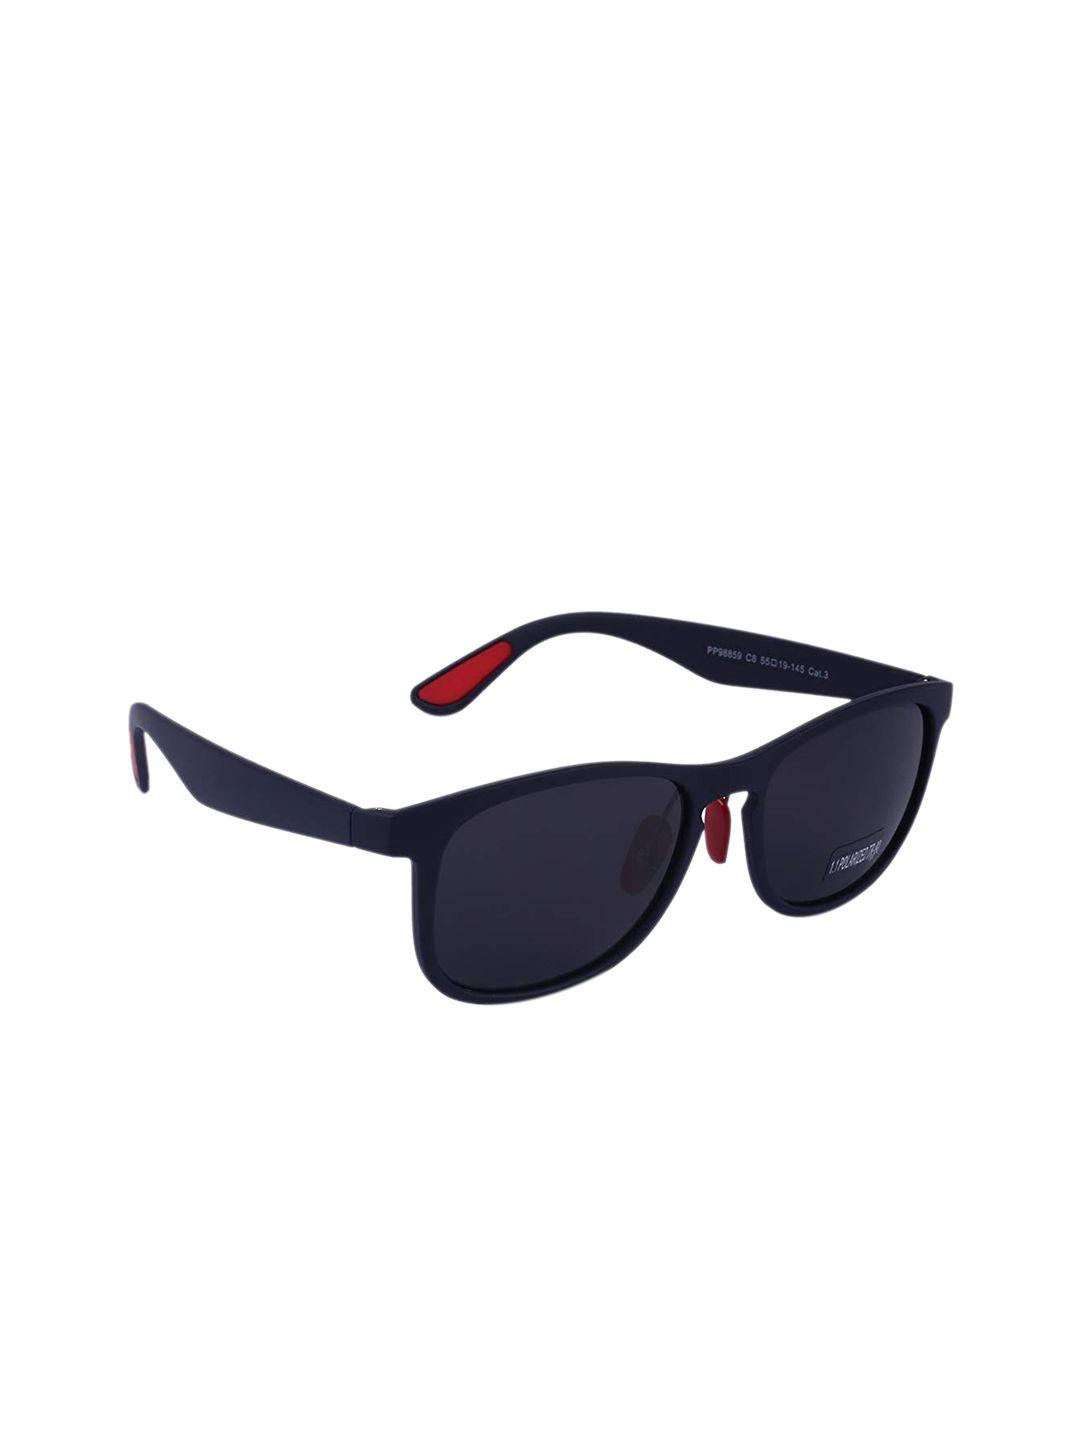 marc louis unisex square sunglasses mlpp98858